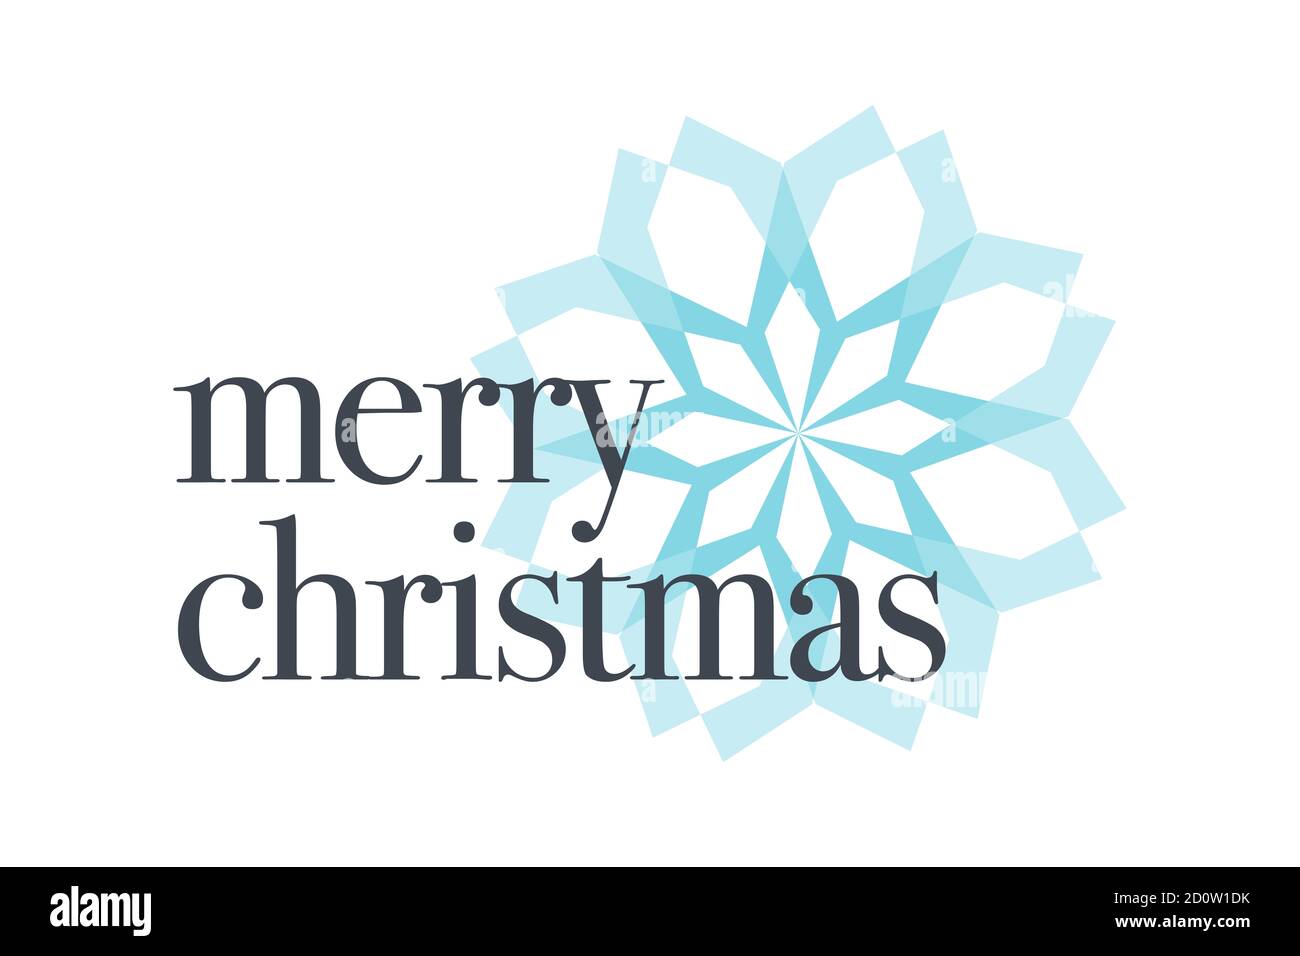 Grafische Gestaltung eines Sprichwort "Merry Christmas" mit klassischer Typografie in blau und grau Farben und geometrische Form in Blume / Schnee Flocke Abstraktion. Stockfoto